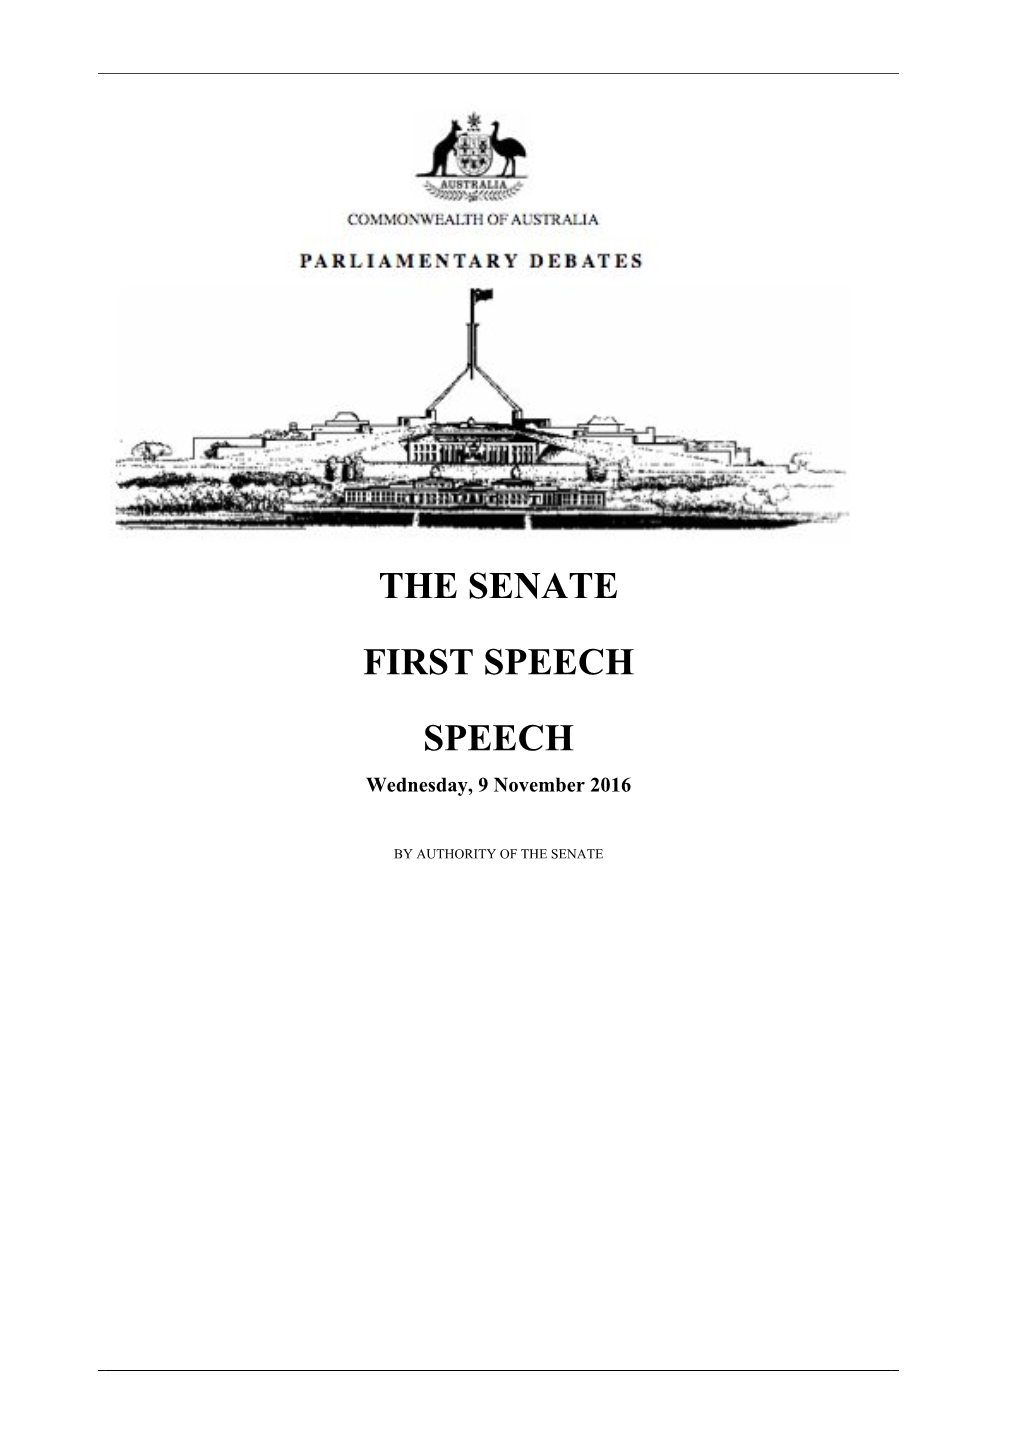 The Senate First Speech Speech